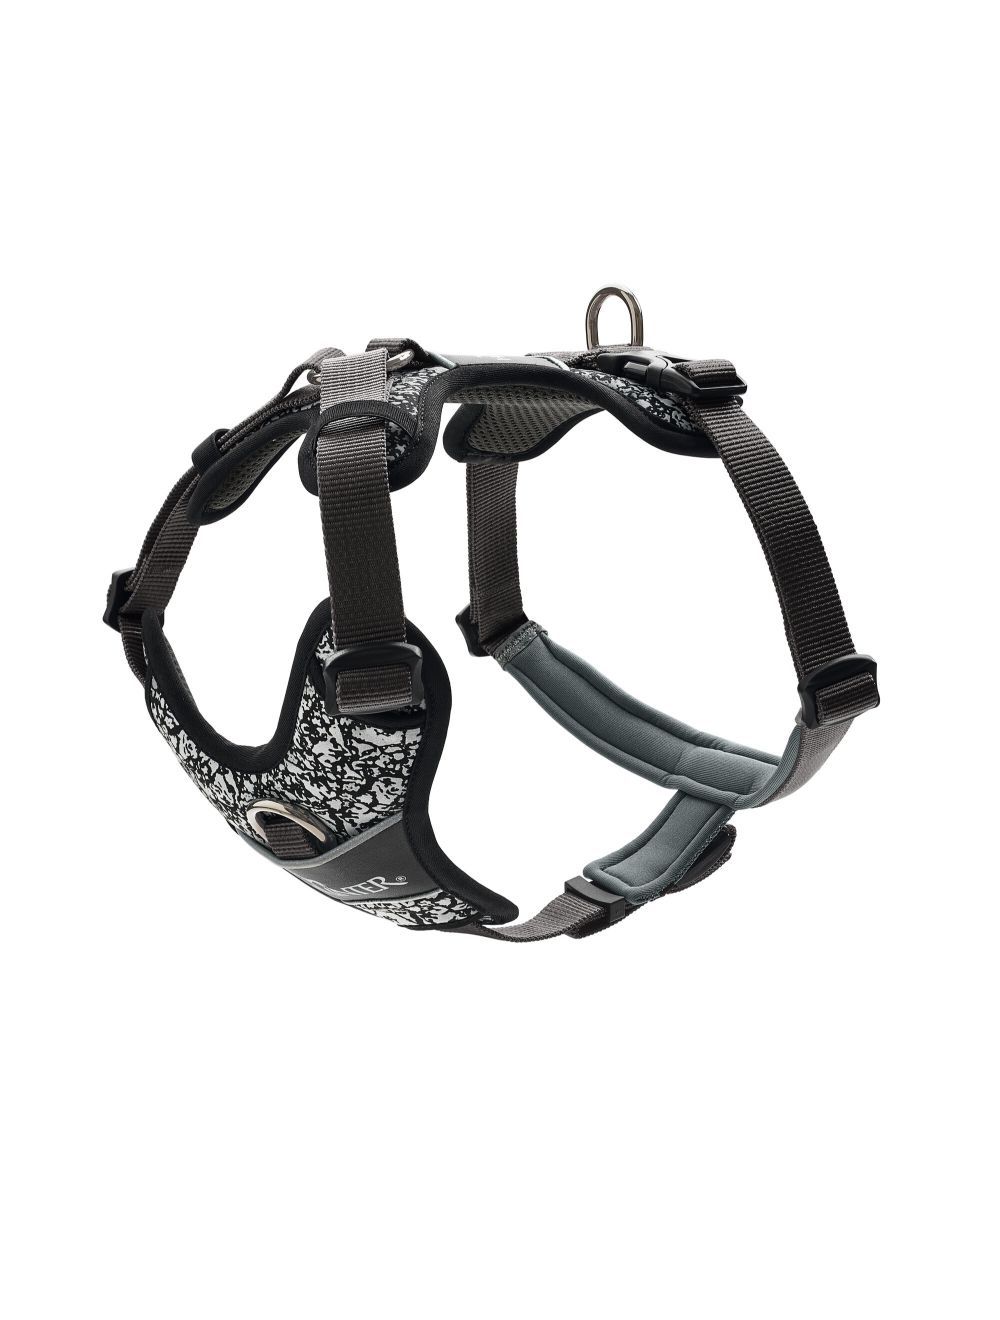 Hunter - Harness Divo Reflect L, black/grey - (68962) - Kjæledyr og utstyr